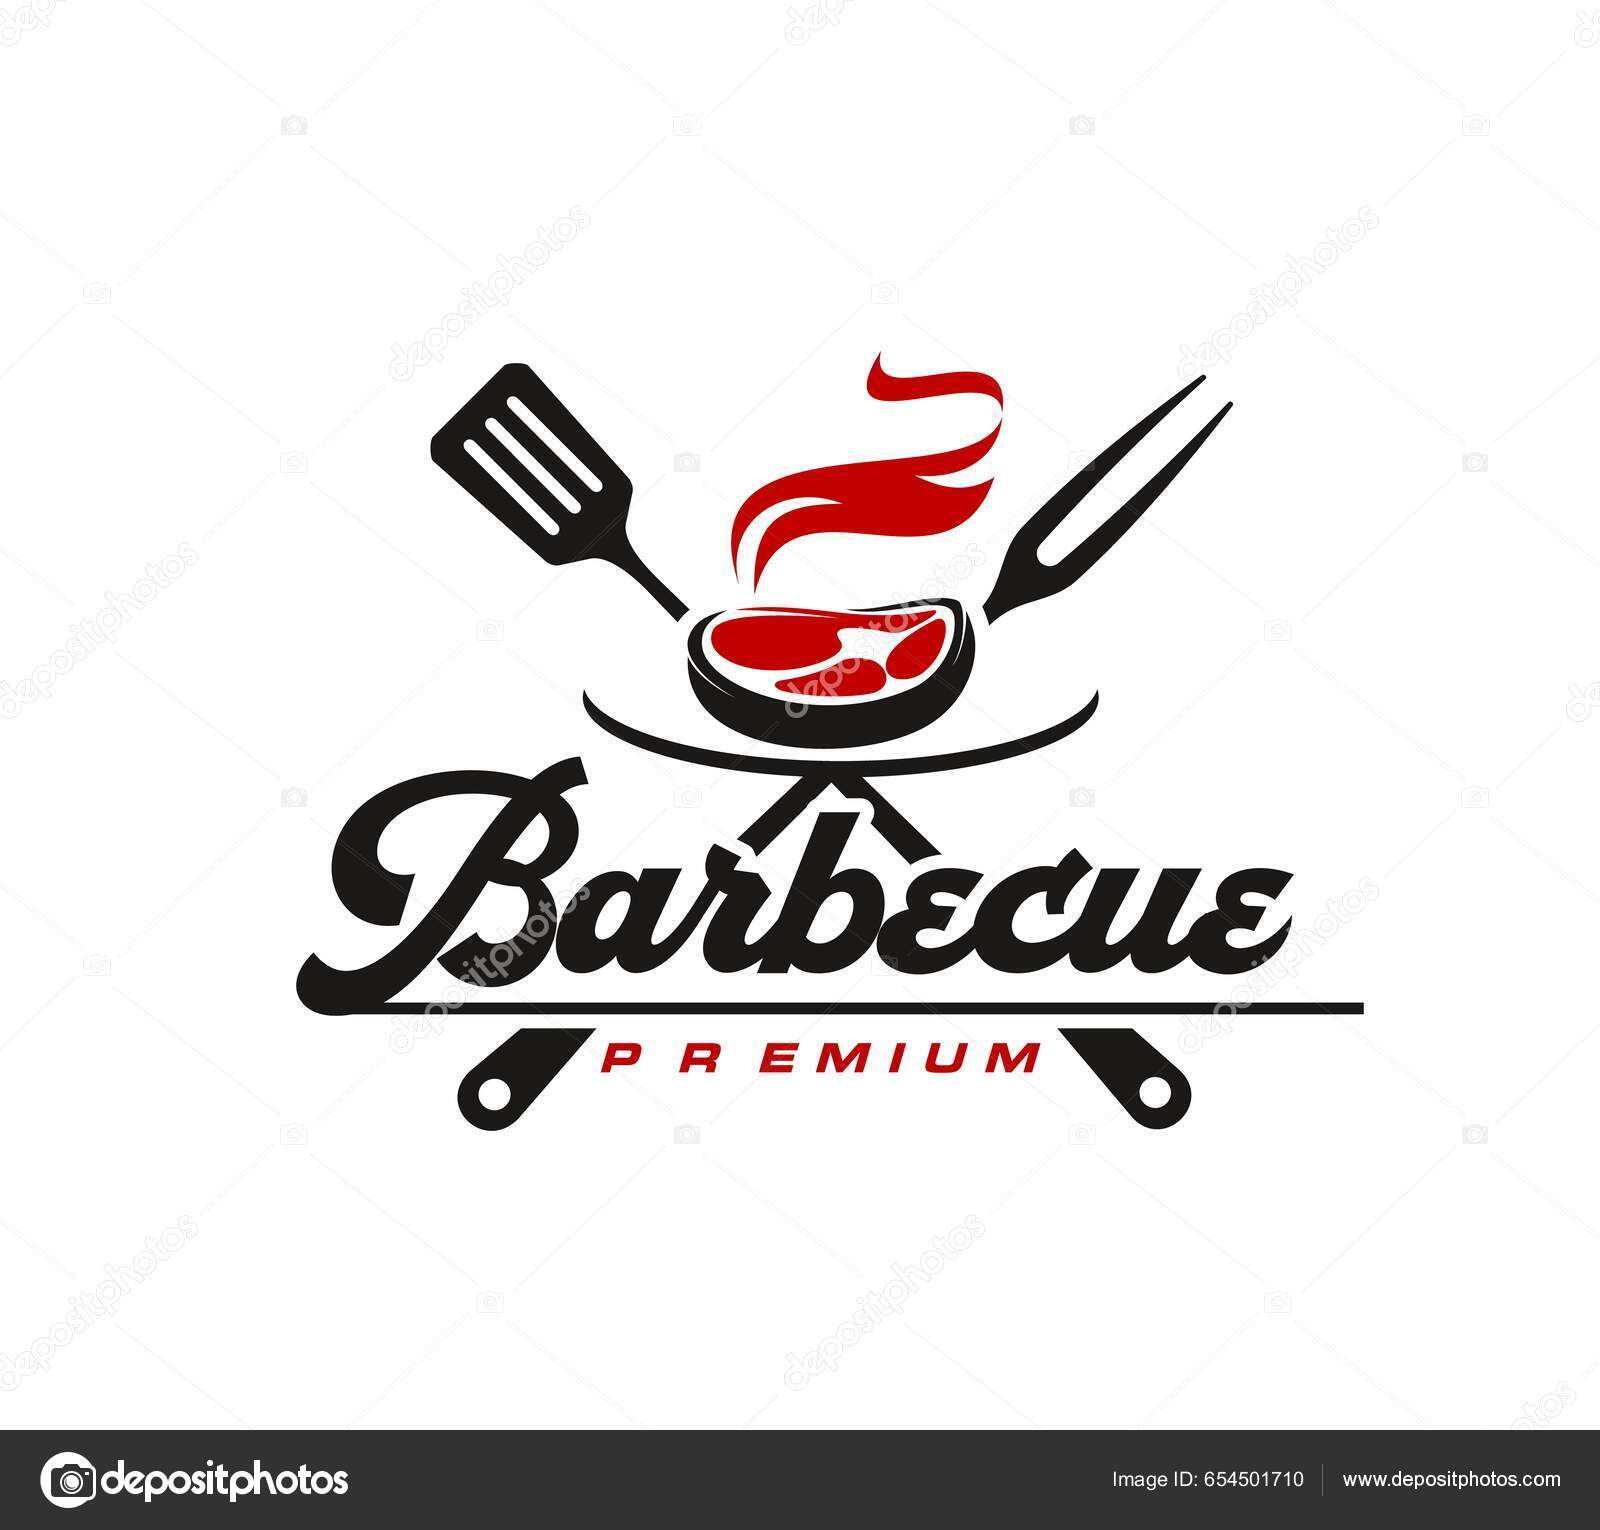 Spatule Et Fourchette À Barbecue. Logo Pour Le Barbecue, Partie De